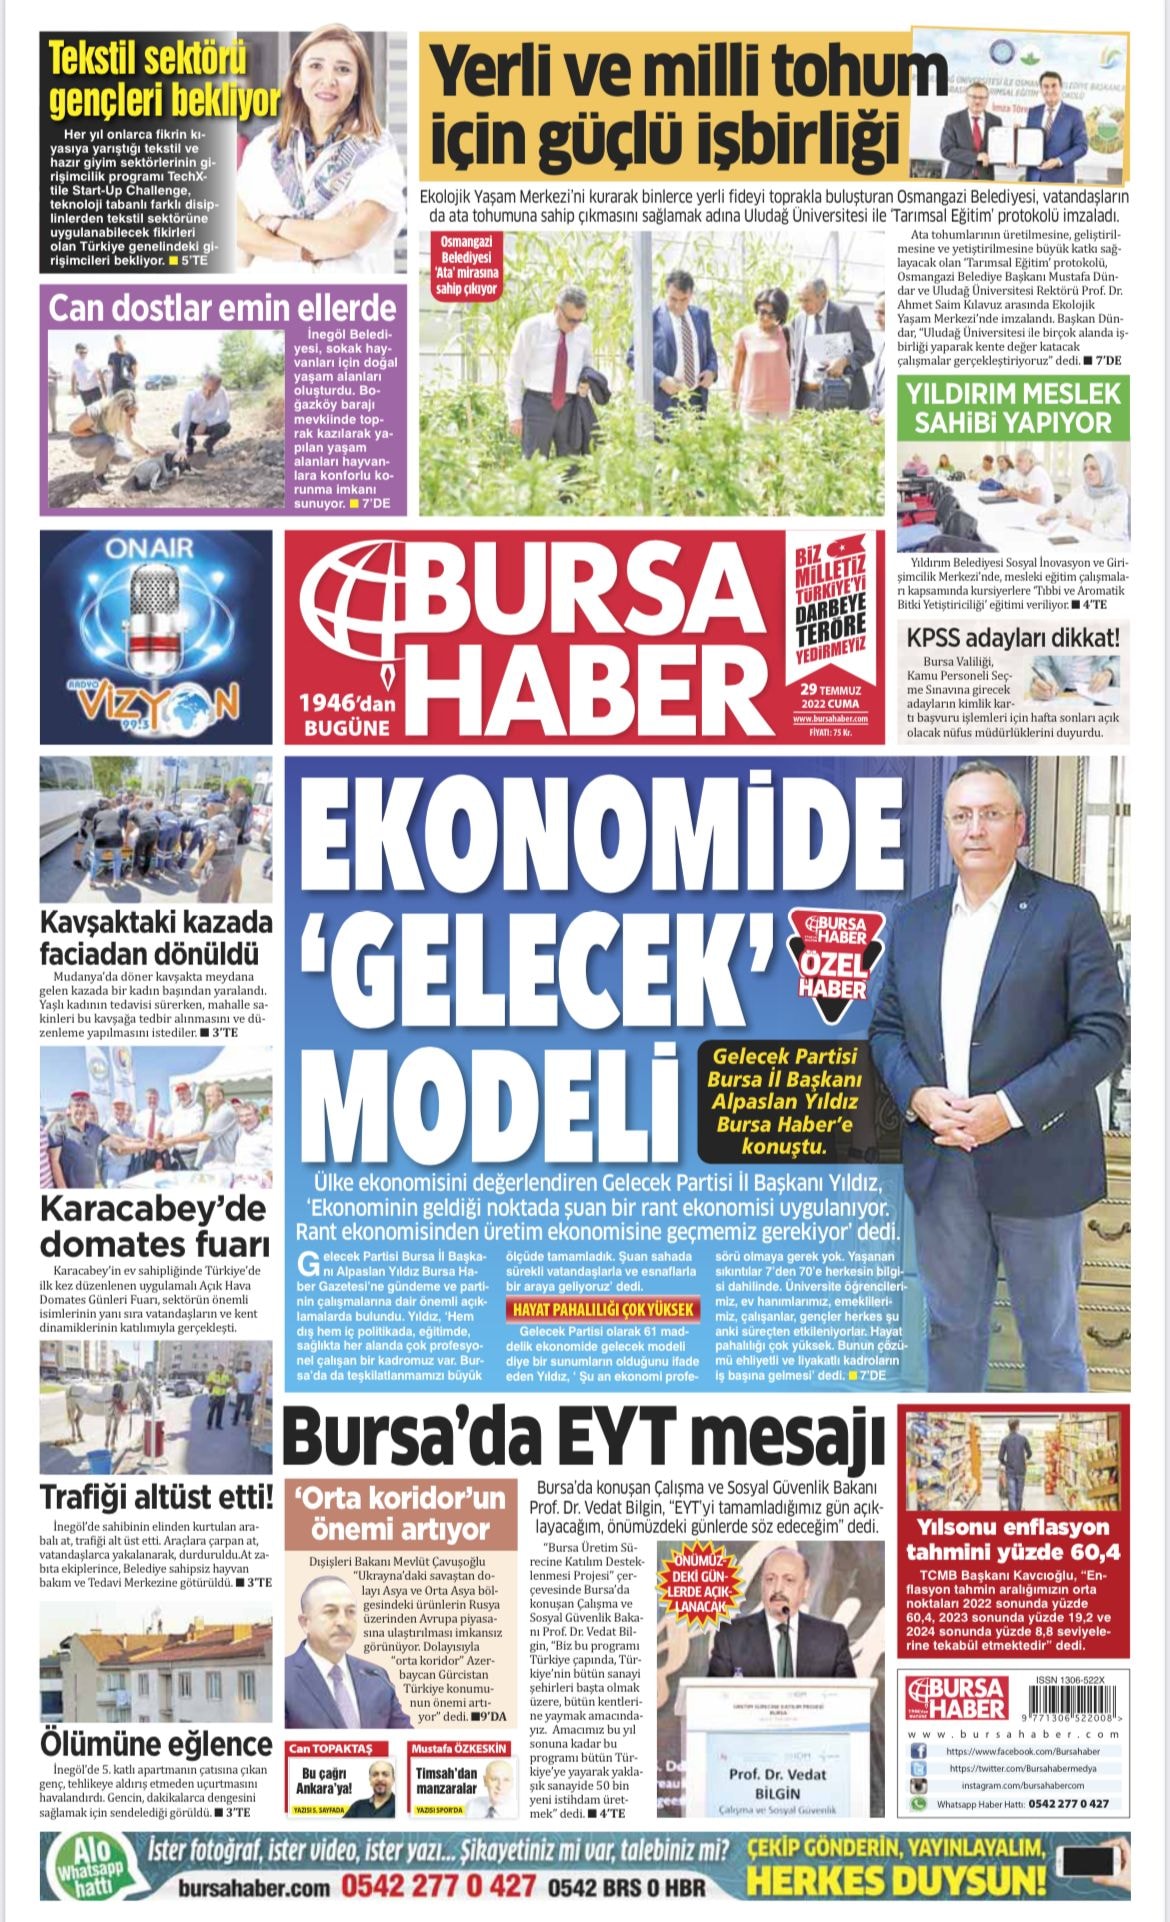 Sayın İl Başkanımız Alpaslan Yıldız Bursa Haber gazete ve Bursa Haber  TV ye değerlendirmelerde bulundu